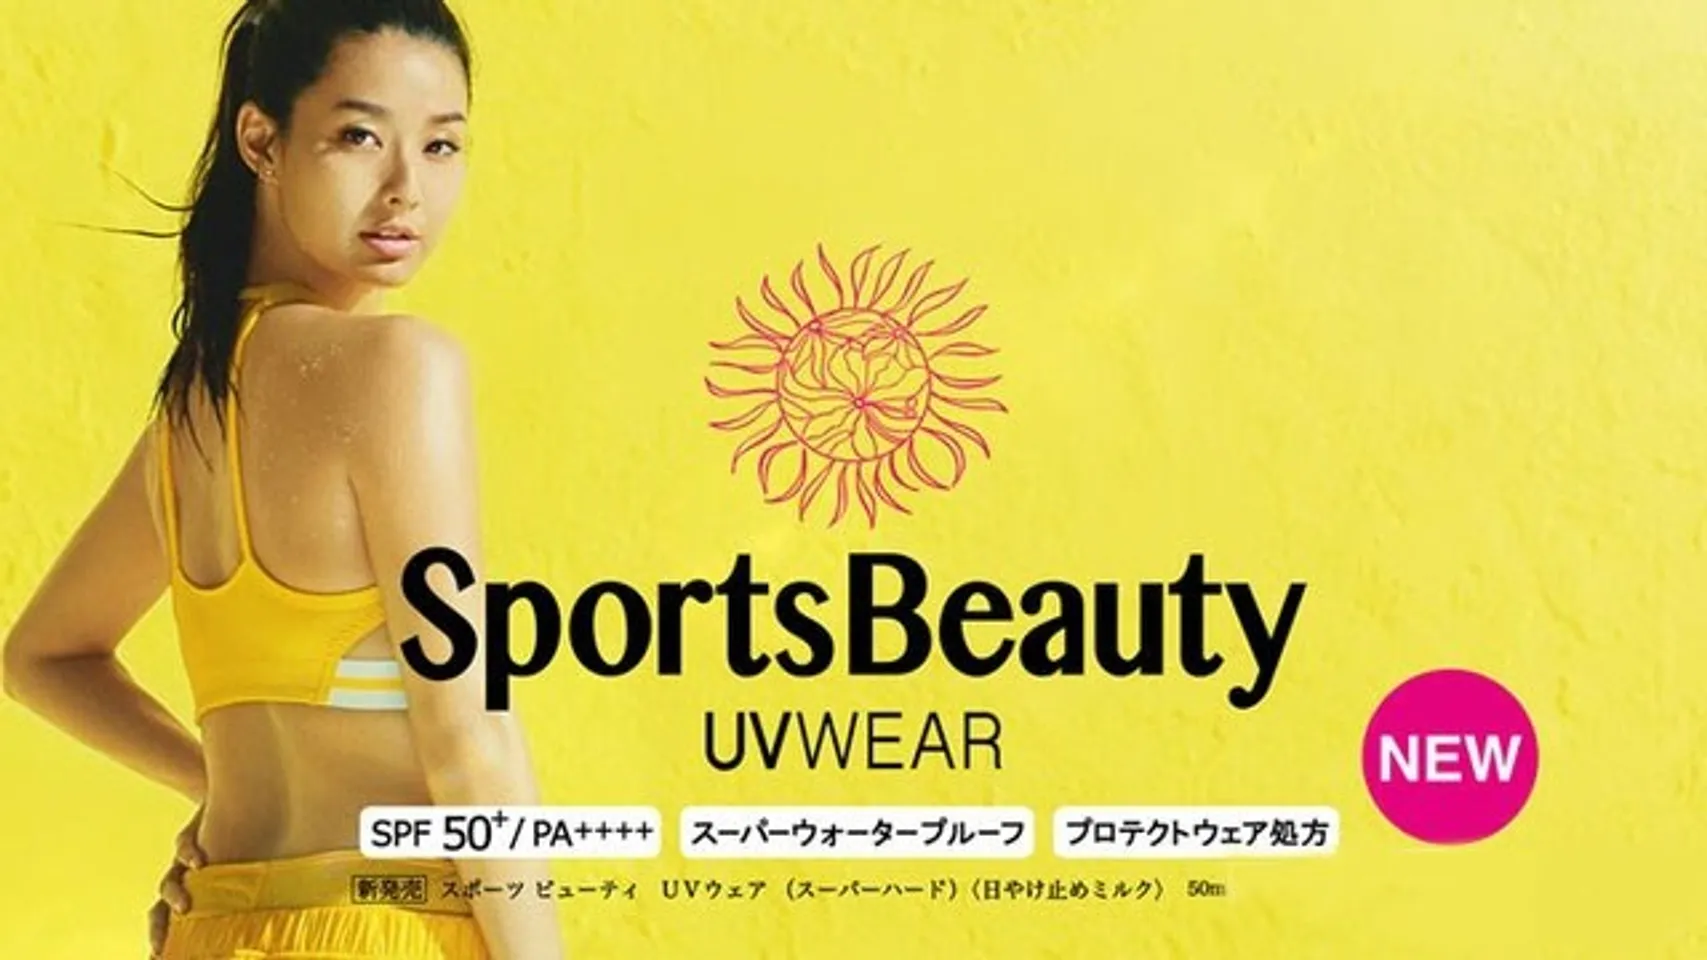 Kem chống nắng Kose Sports Beauty UV Wear SPF 50+ /PA++++ được Kose phát triển và xây dựng trên một công nghệ mới, tạo một màn chắn hoàn hảo giữa da và ánh nắng mặt trời